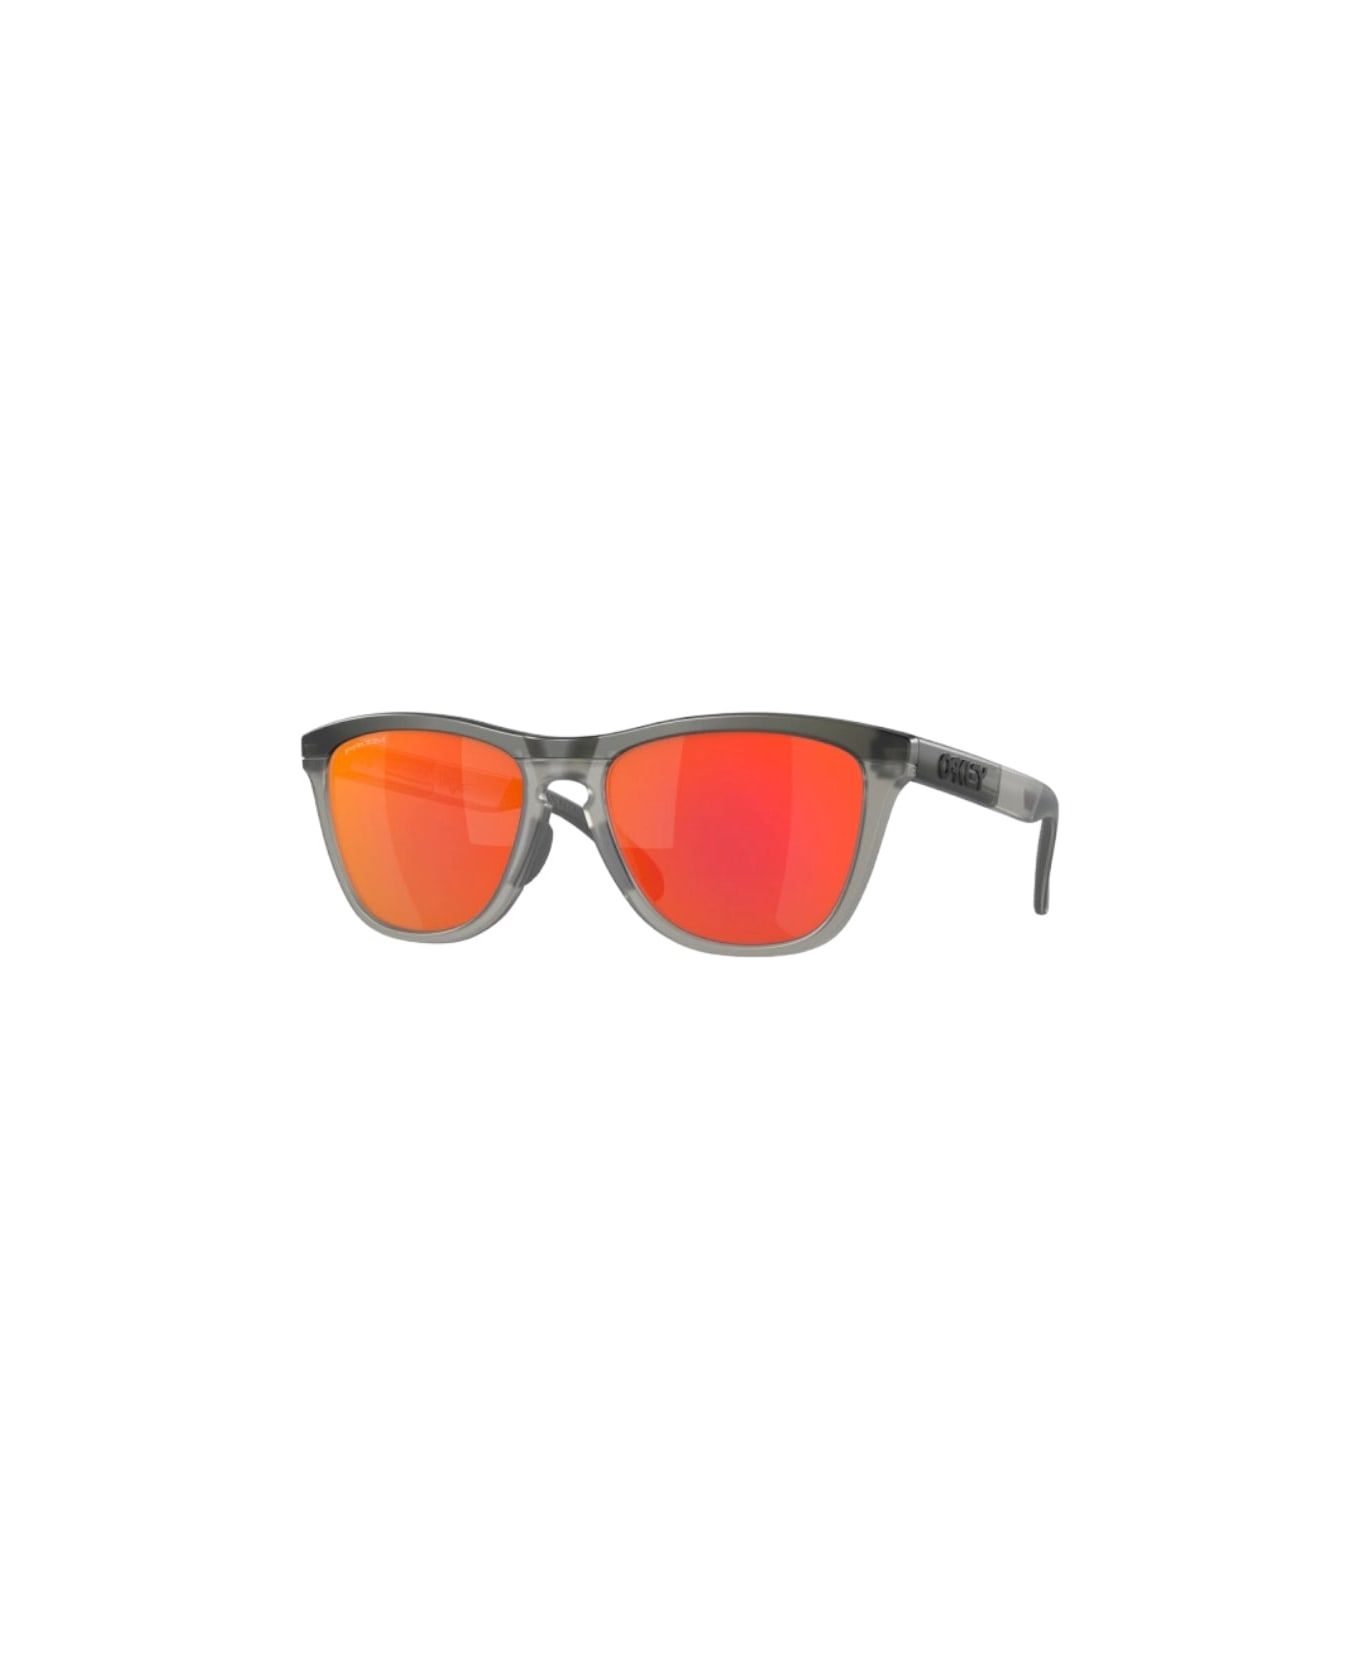 Oakley Frogskins Range - 9284 Sunglasses